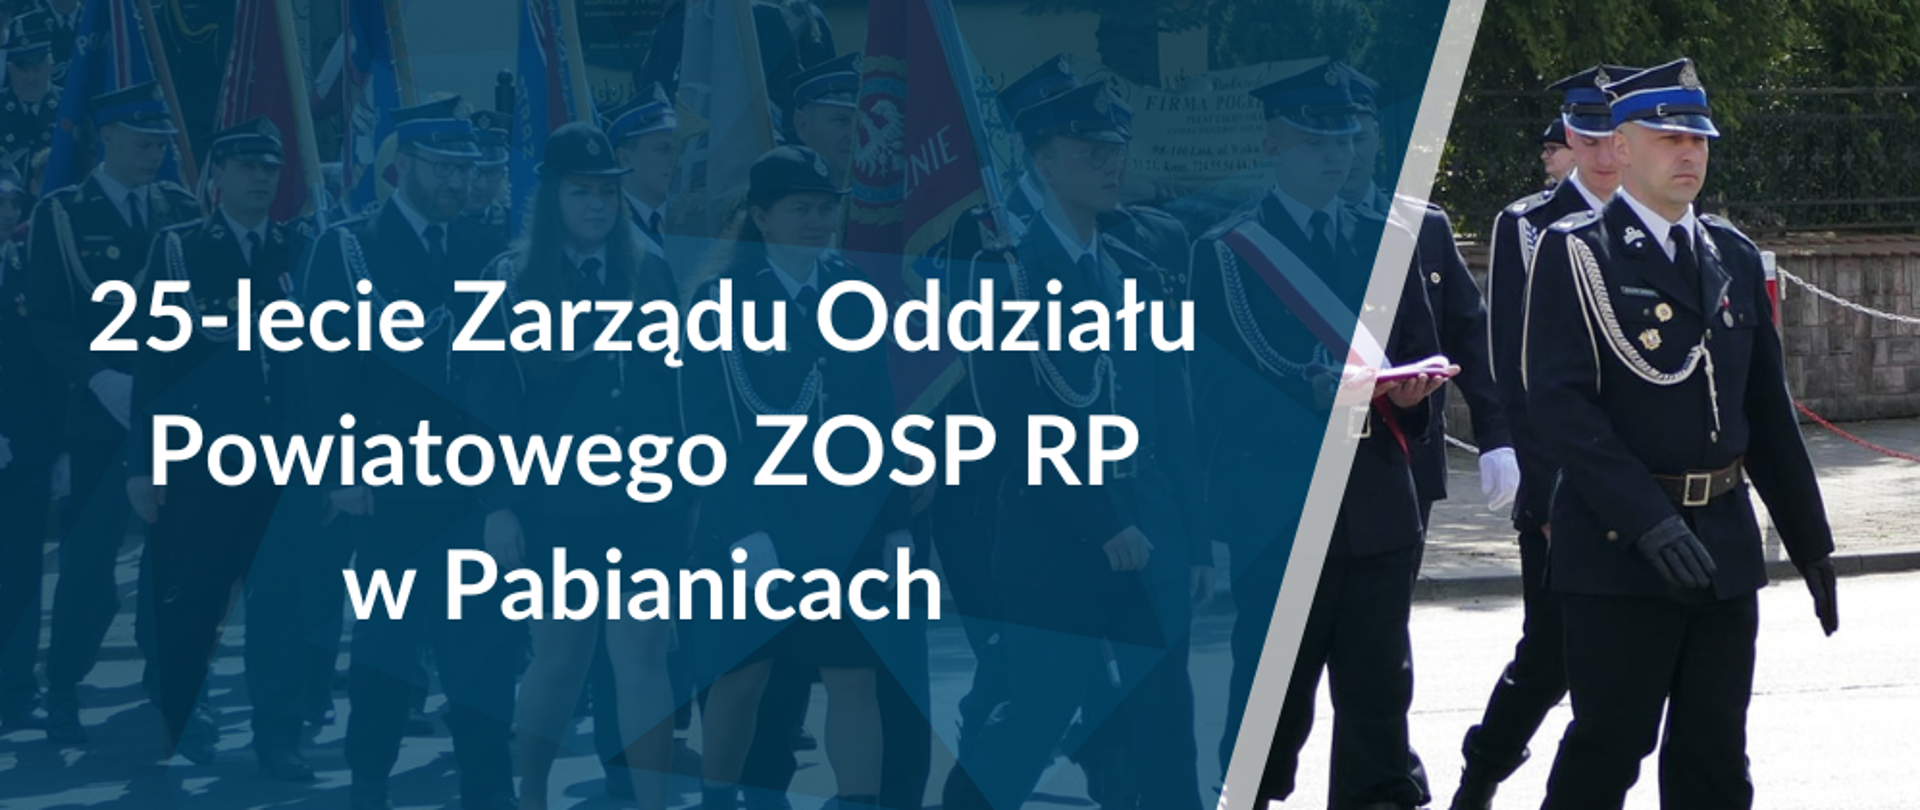 W tle infografiki widać pododdział sztandarów OSP z terenu powiatu pabianickiego. Po lewej stronie na niebieskim tle biały napis "25-lecie Zarządu Oddziału powiatowego ZOSP RP w Pabianicach" oraz nieco niżej logo Związku OSP RP.